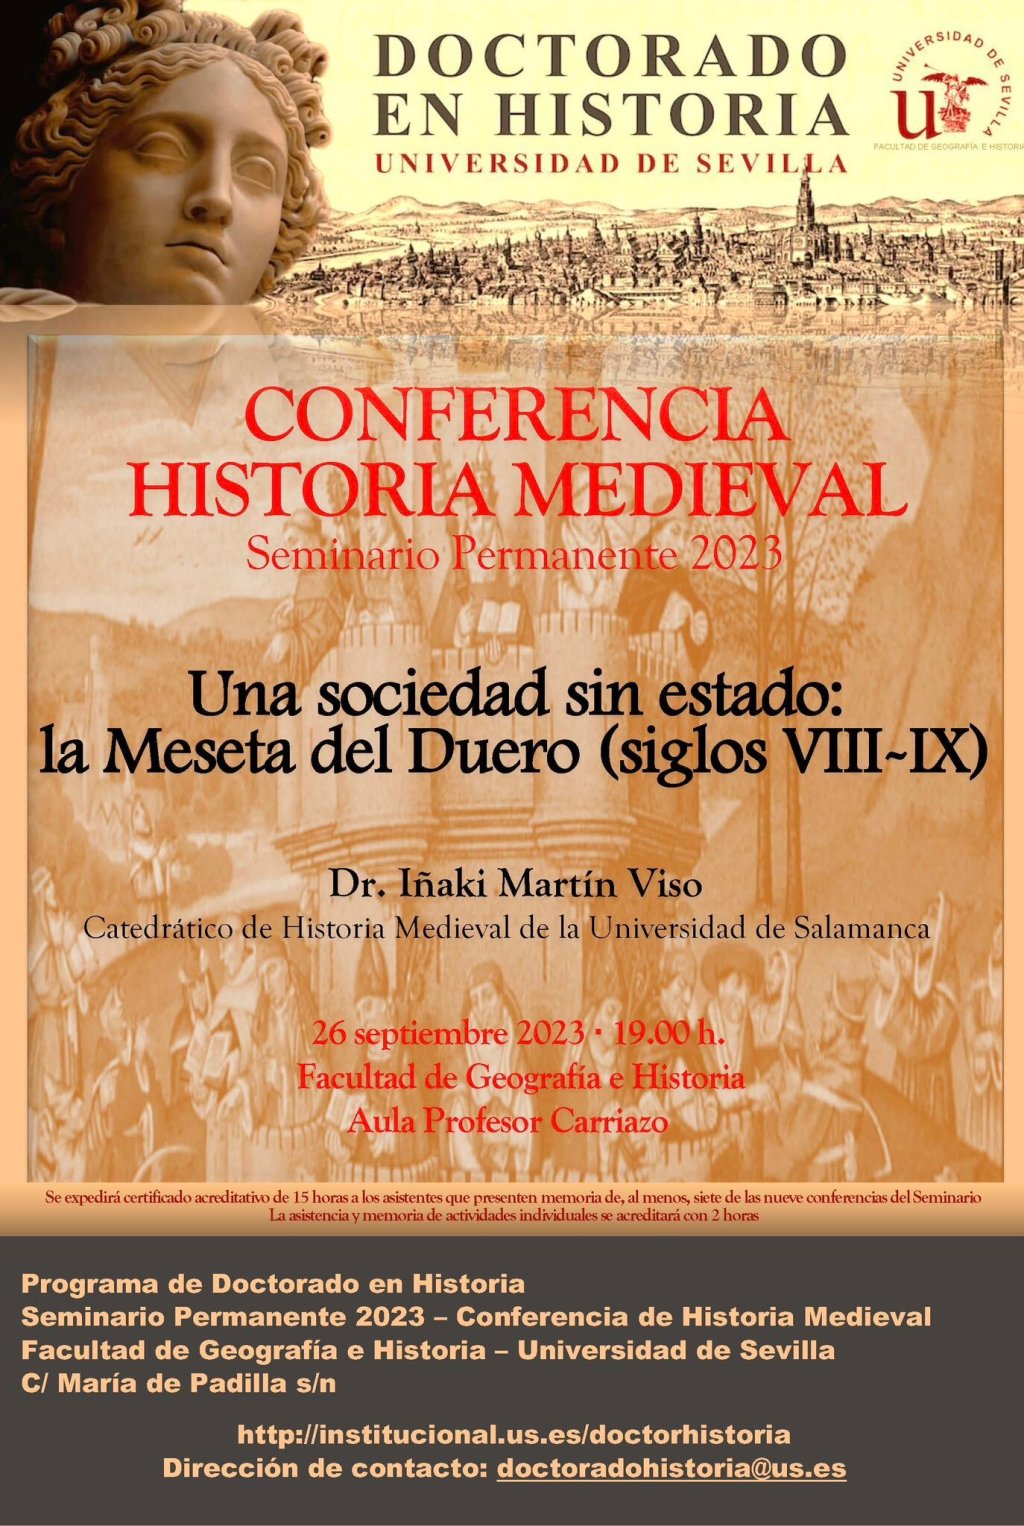 Iñaki Martín Viso imparte el seminario «Una sociedad sin estado: la Meseta del Duero (siglos VIII-IX)» en la Universidad de Sevilla